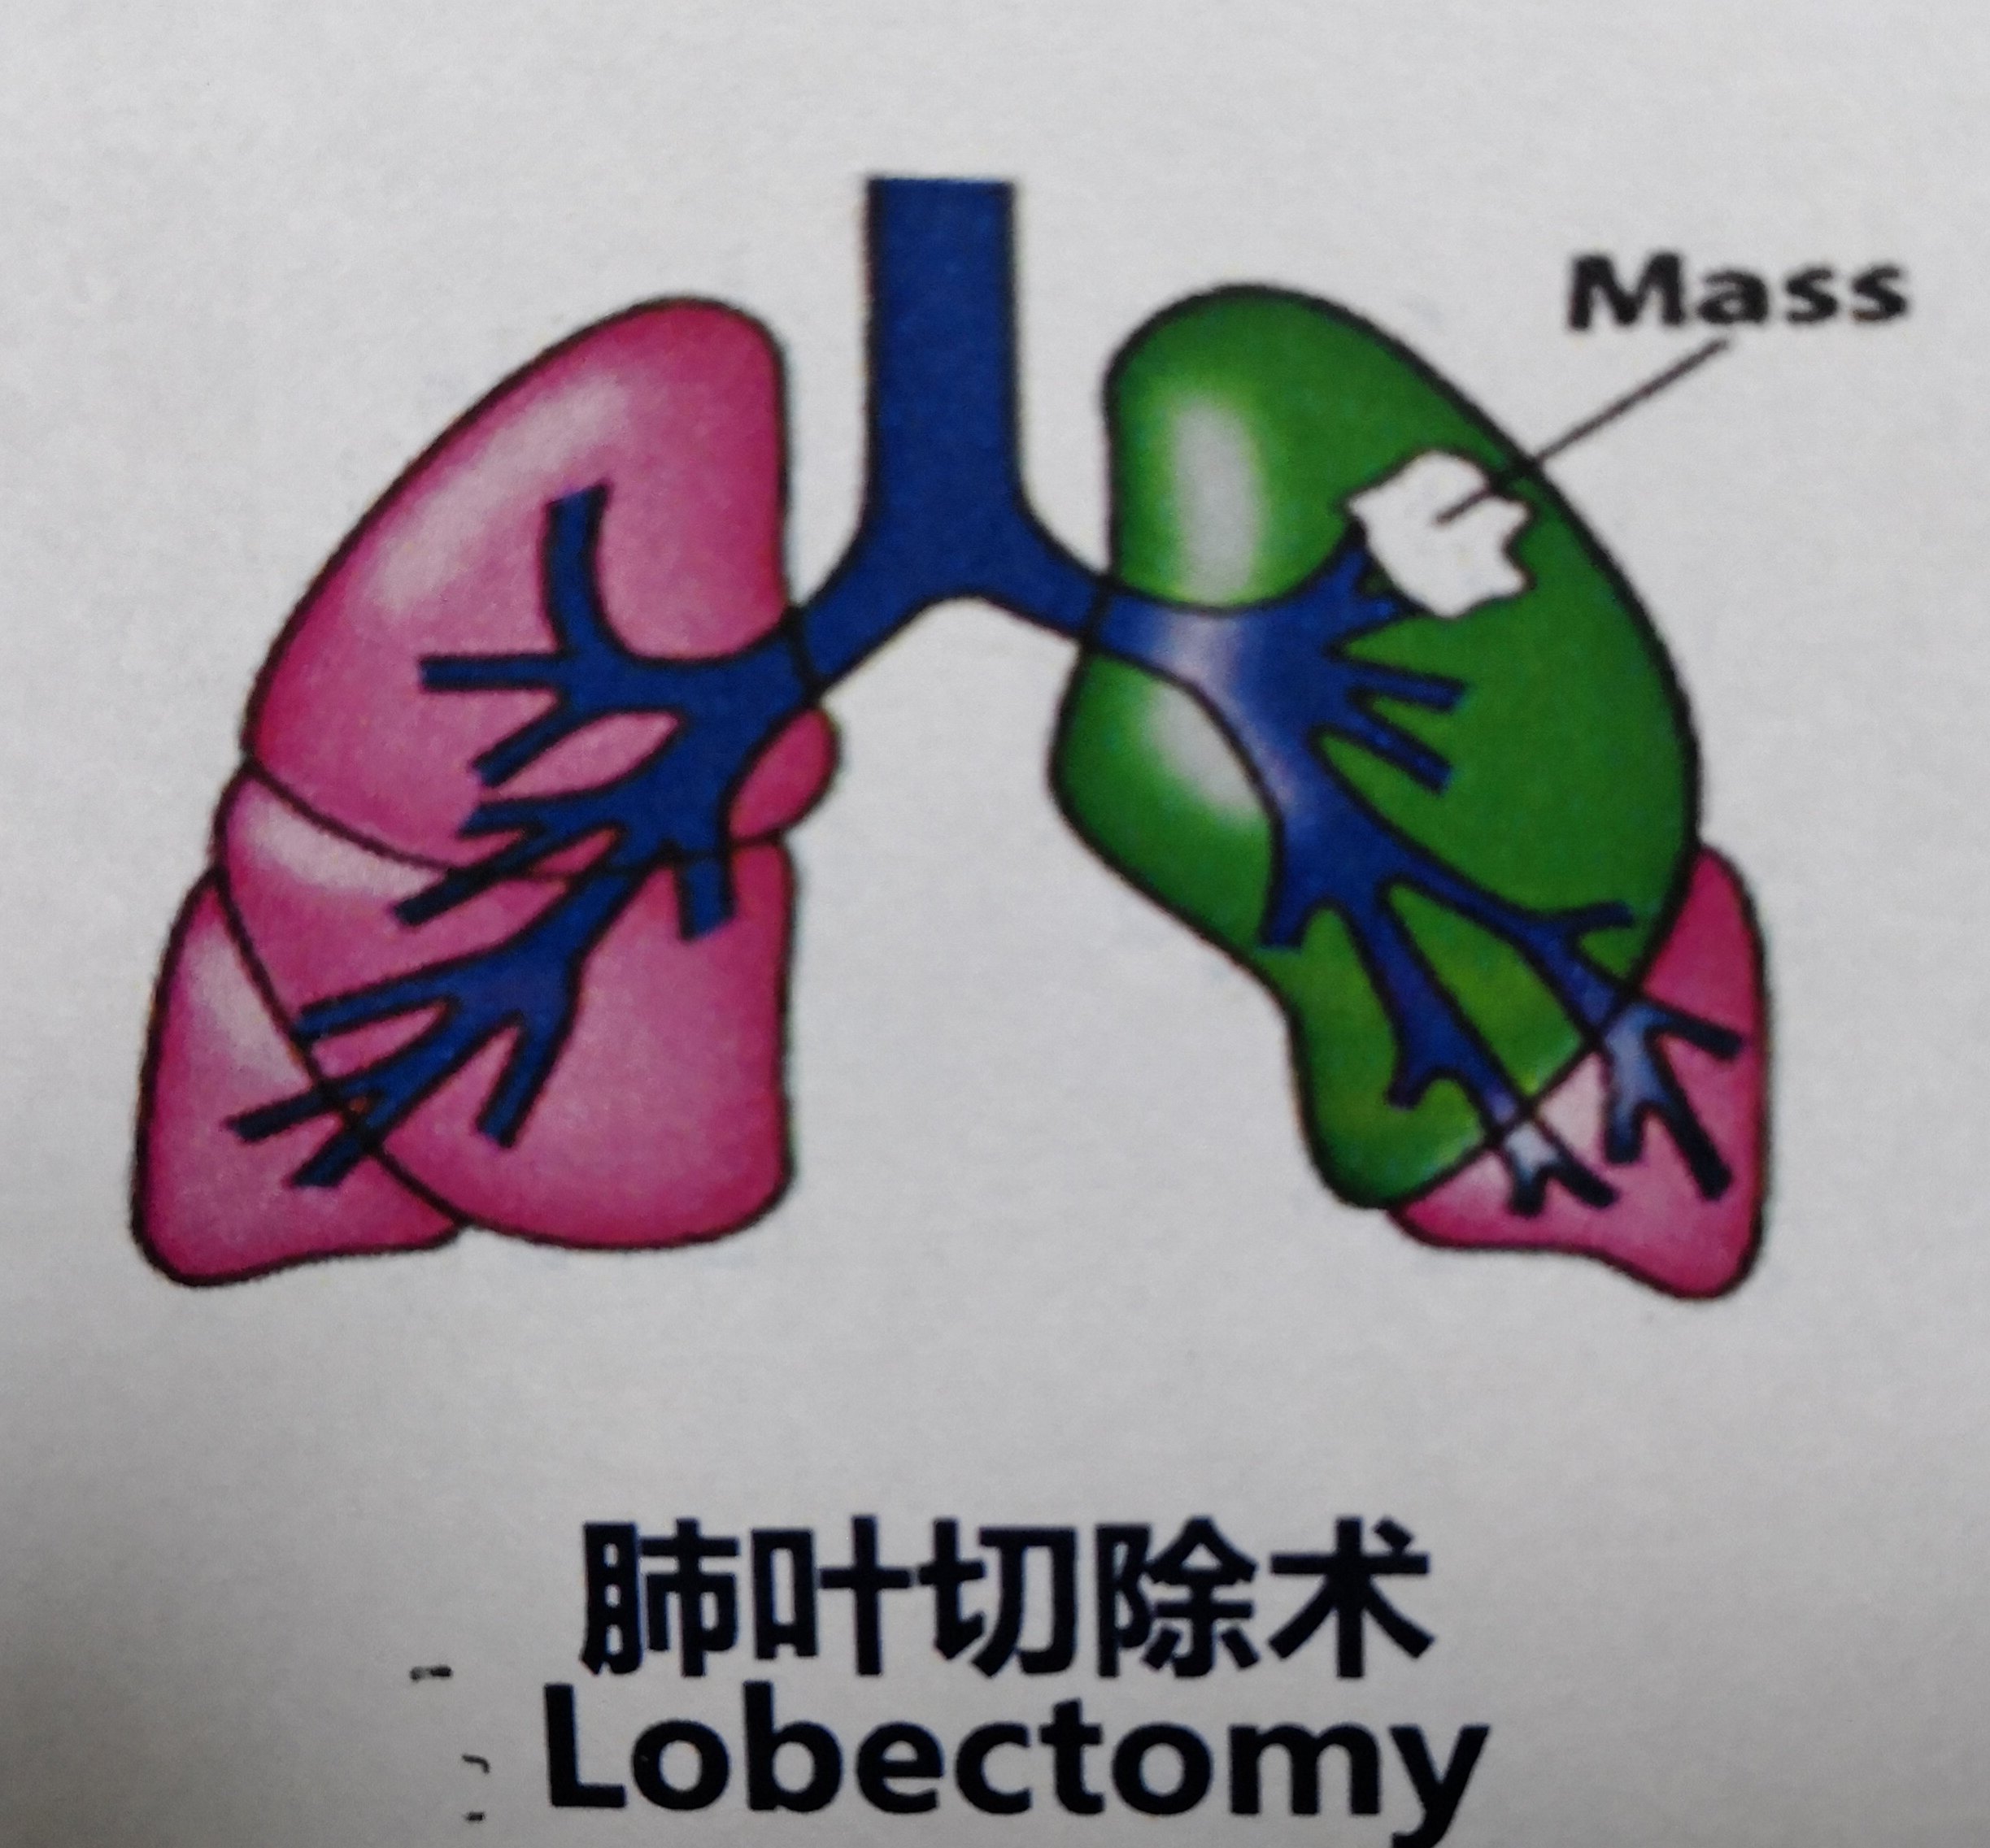 保留健康肺组织—肺叶切除术 